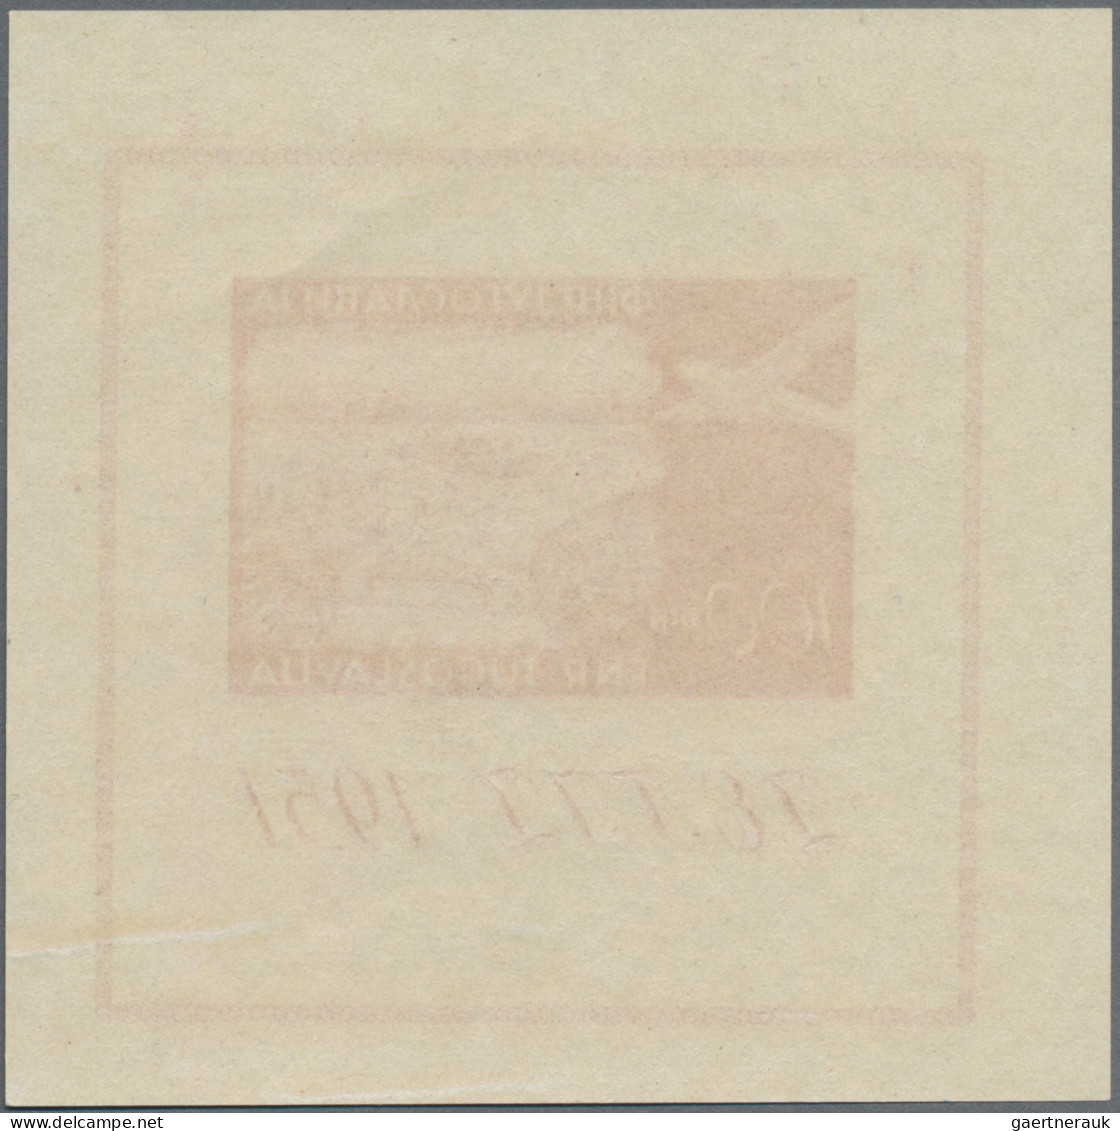 Yugoslavia: 1951, 1961, Briefmarkenausstellung ZEFIZ, 2 postfrische Blocks, dazu